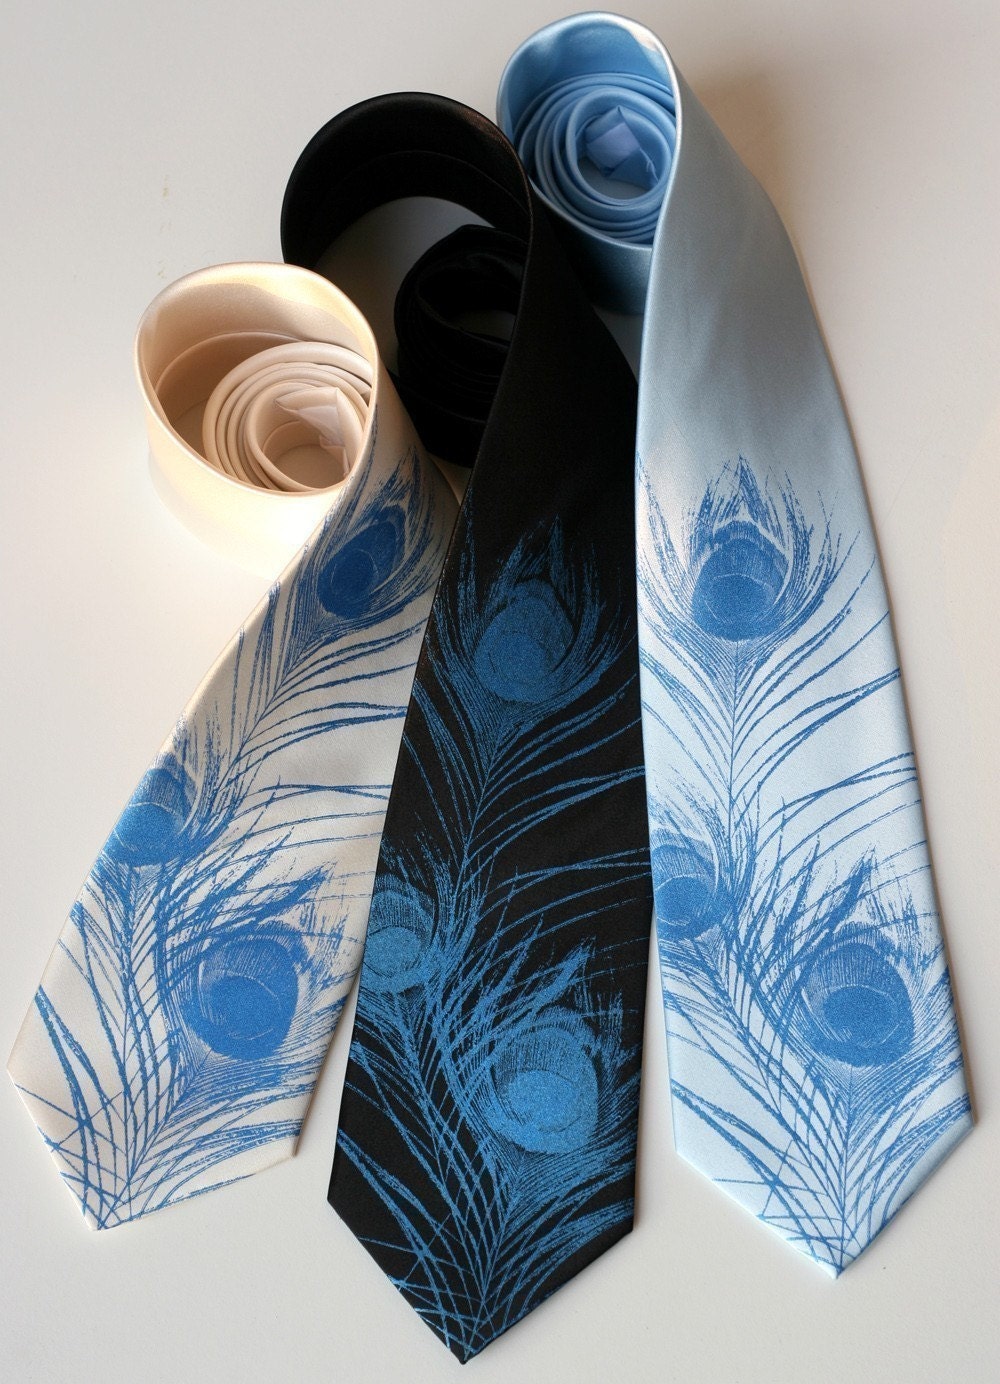 Peacock feather men's necktie. Silkscreened microfiber tie.